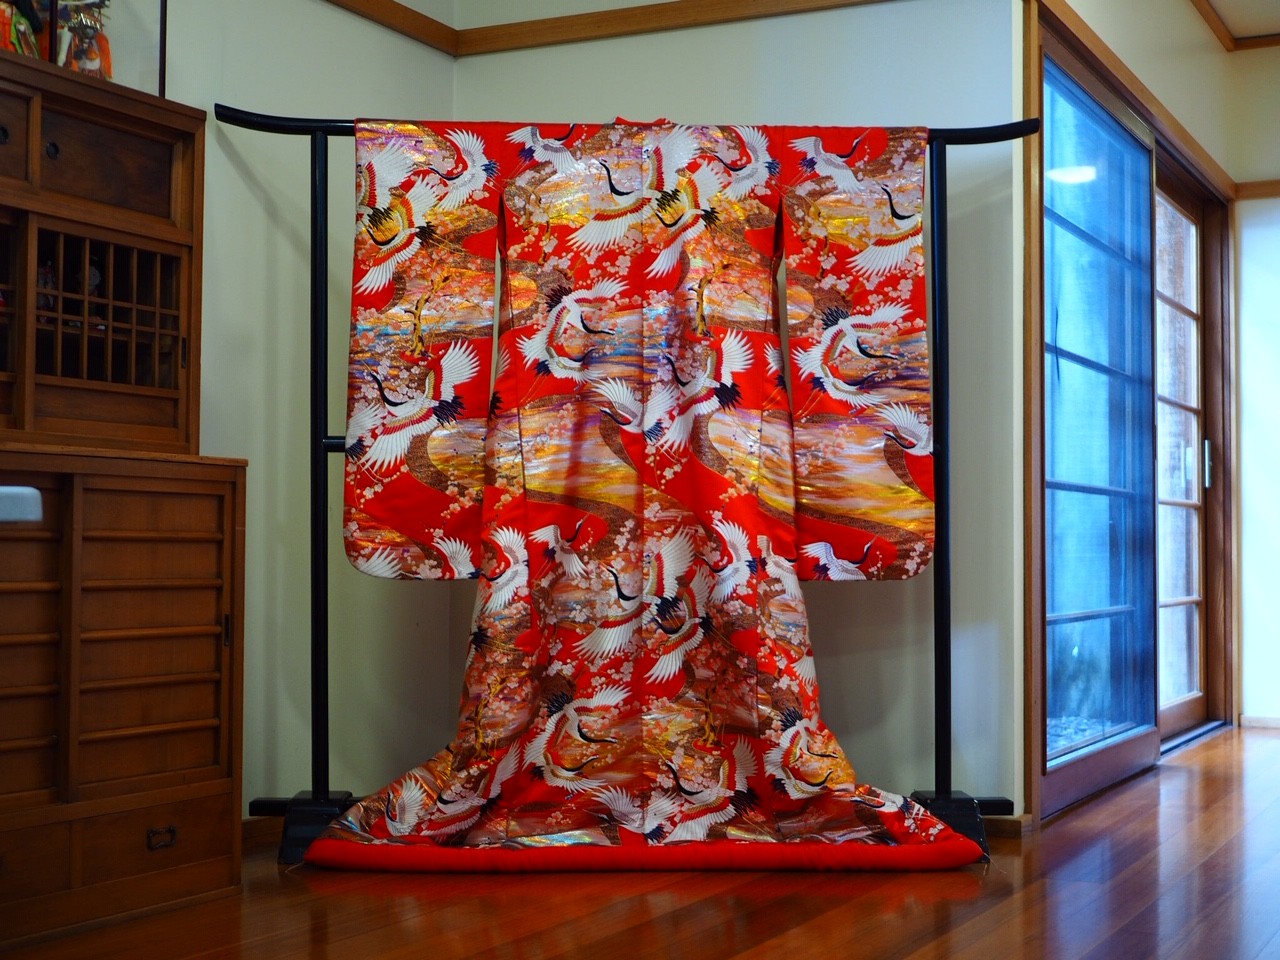 Red kimono on display